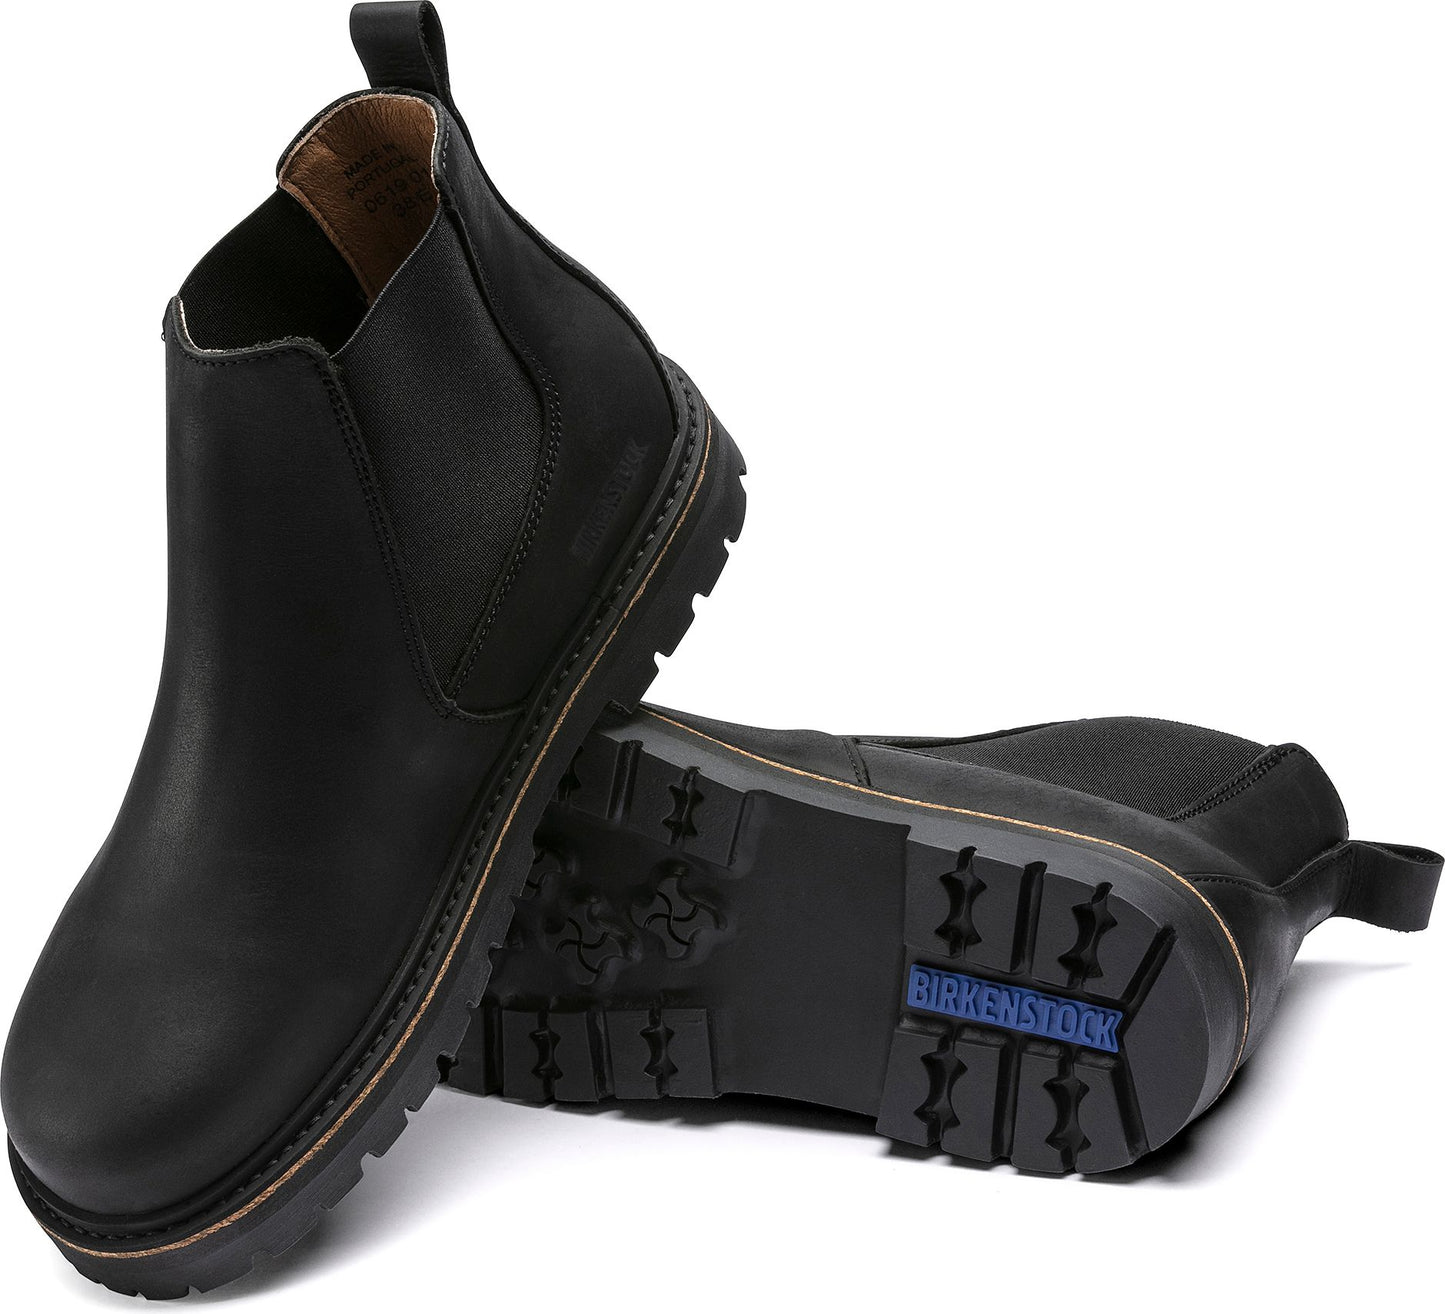 Birkenstock Boots Stalon Black - Regular Fit